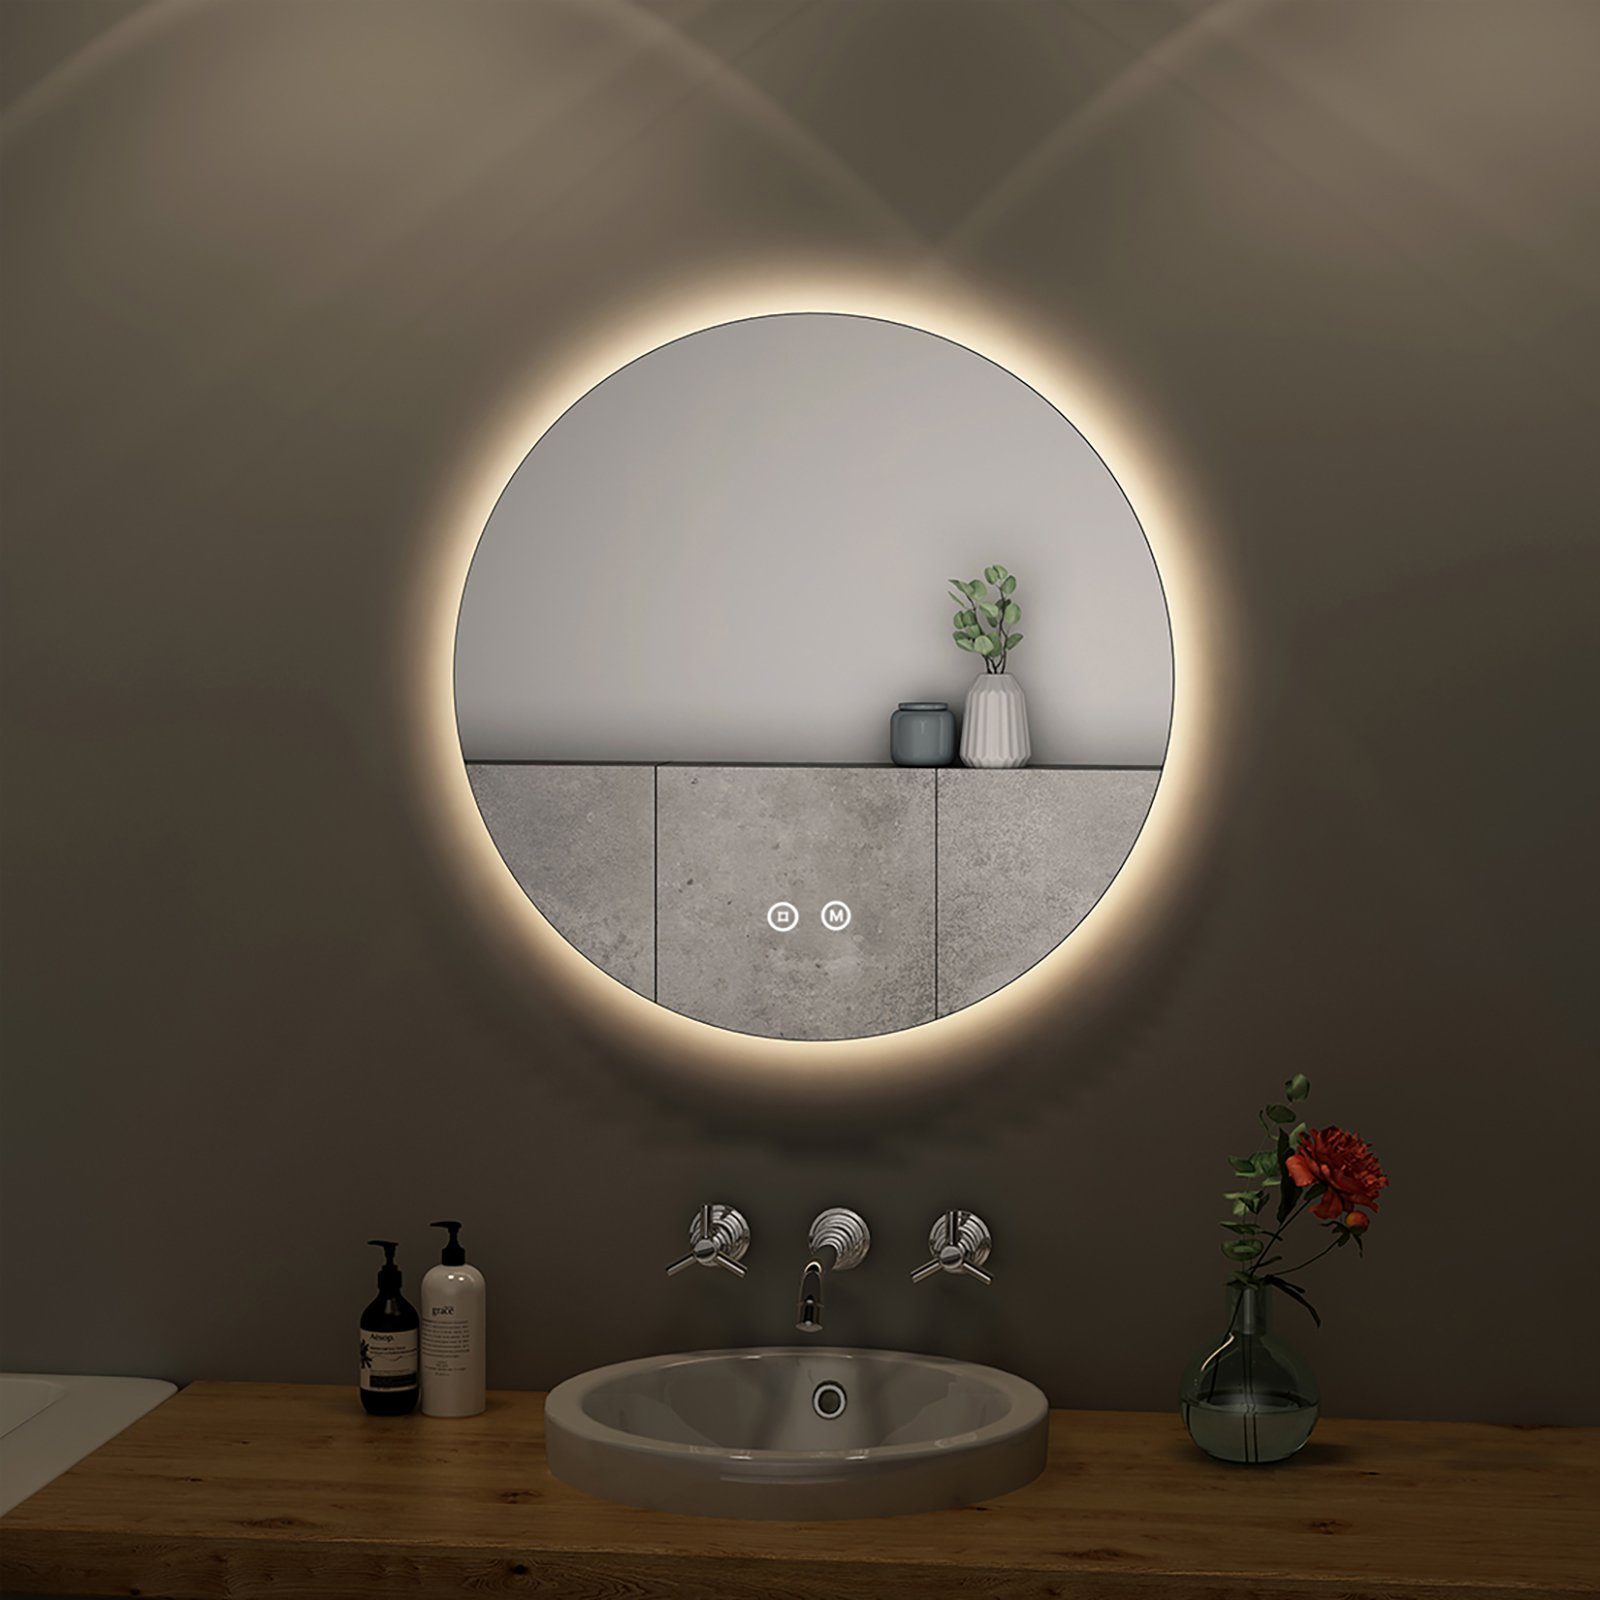 S'AFIELINA Badspiegel Runder Badezimmerspiegel mit beleuchtung LED Lichtspiegel Wandspiegel, Touchschalter,3 Lichtfarben,Dimmbar,Memory-Funktion,Energiesparend